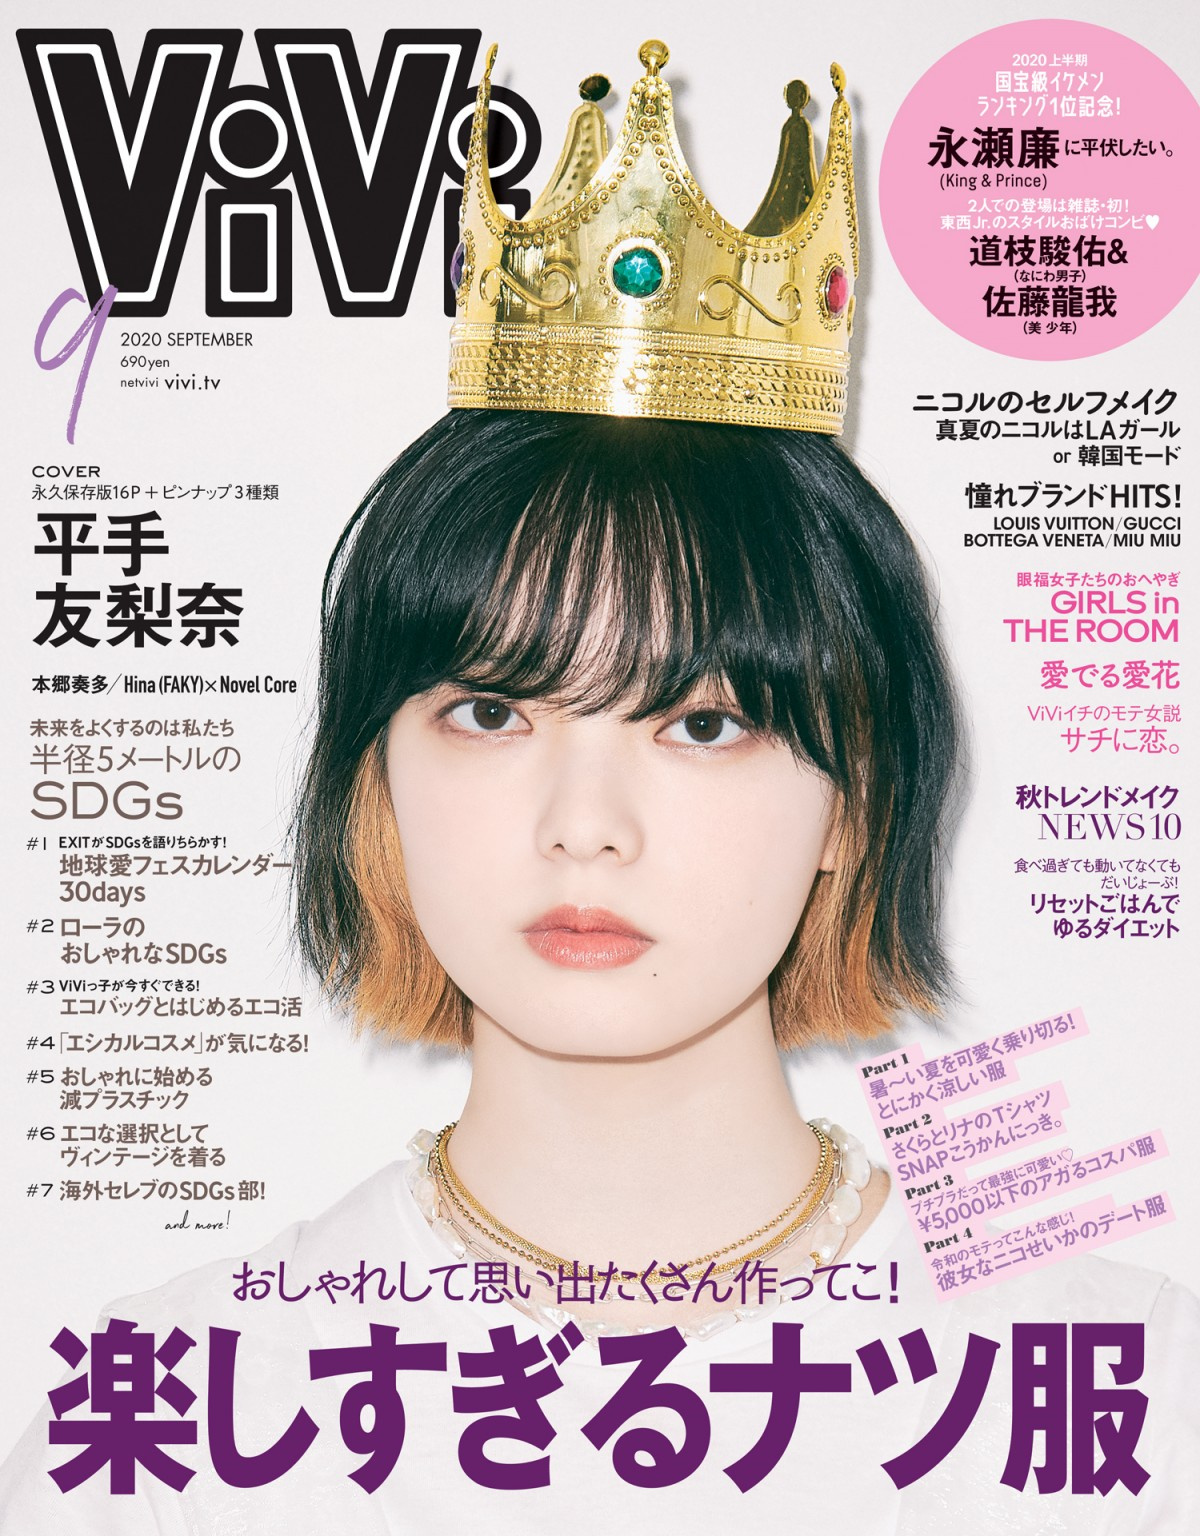 平手友梨奈 19歳初表紙は話題のインナーカラー 王冠姿 話題のmvへ込めた思いも告白 Oricon News